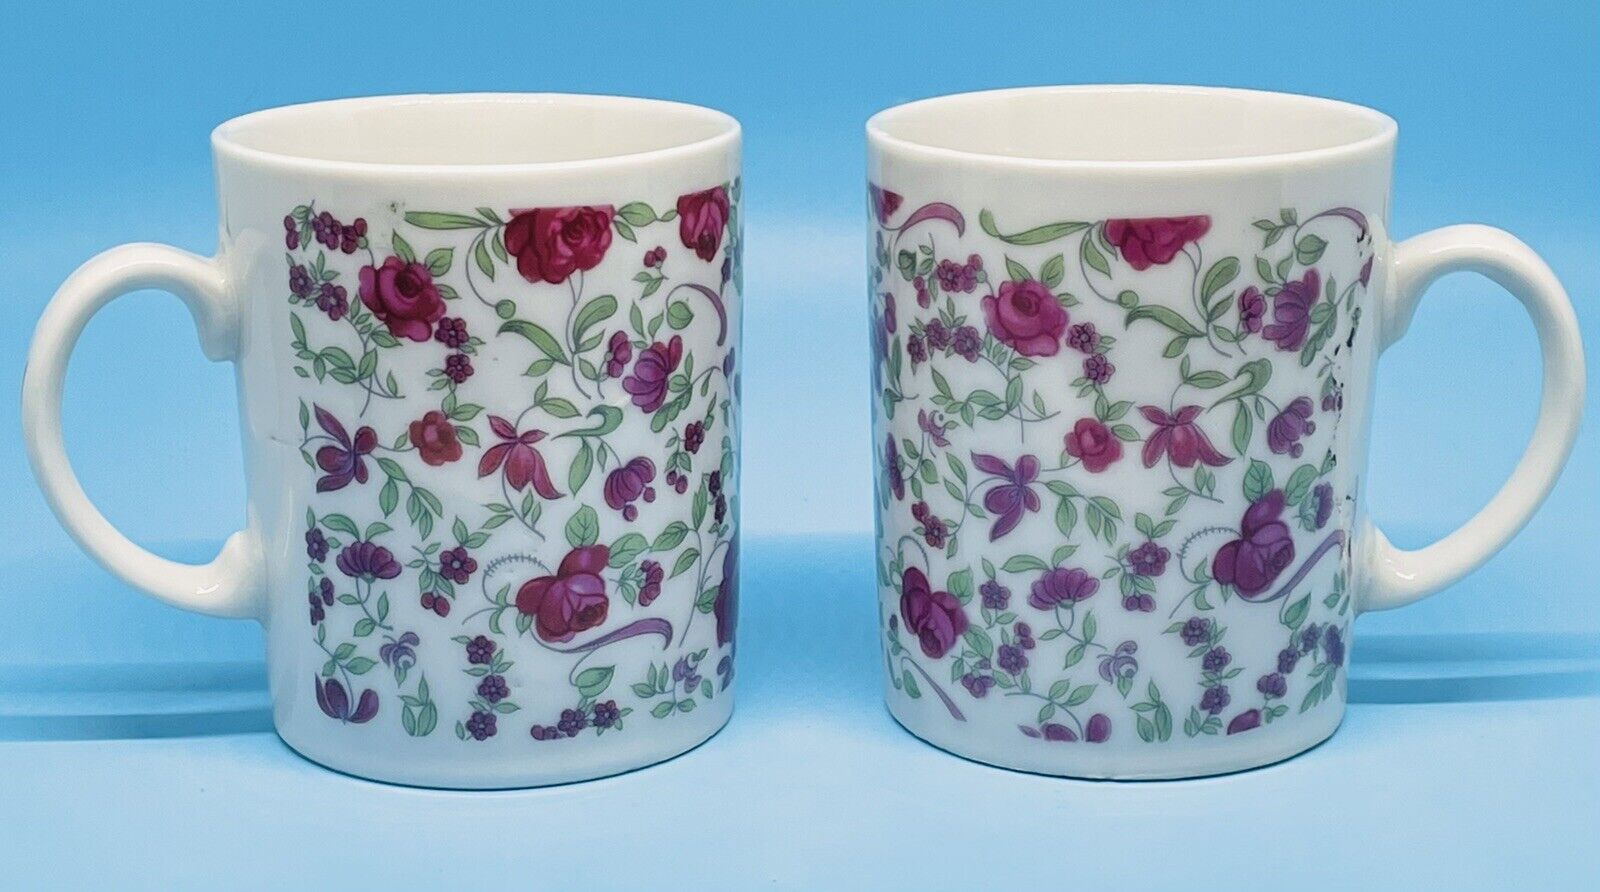 Vintage Pair of Floral Mugs Made in Japan